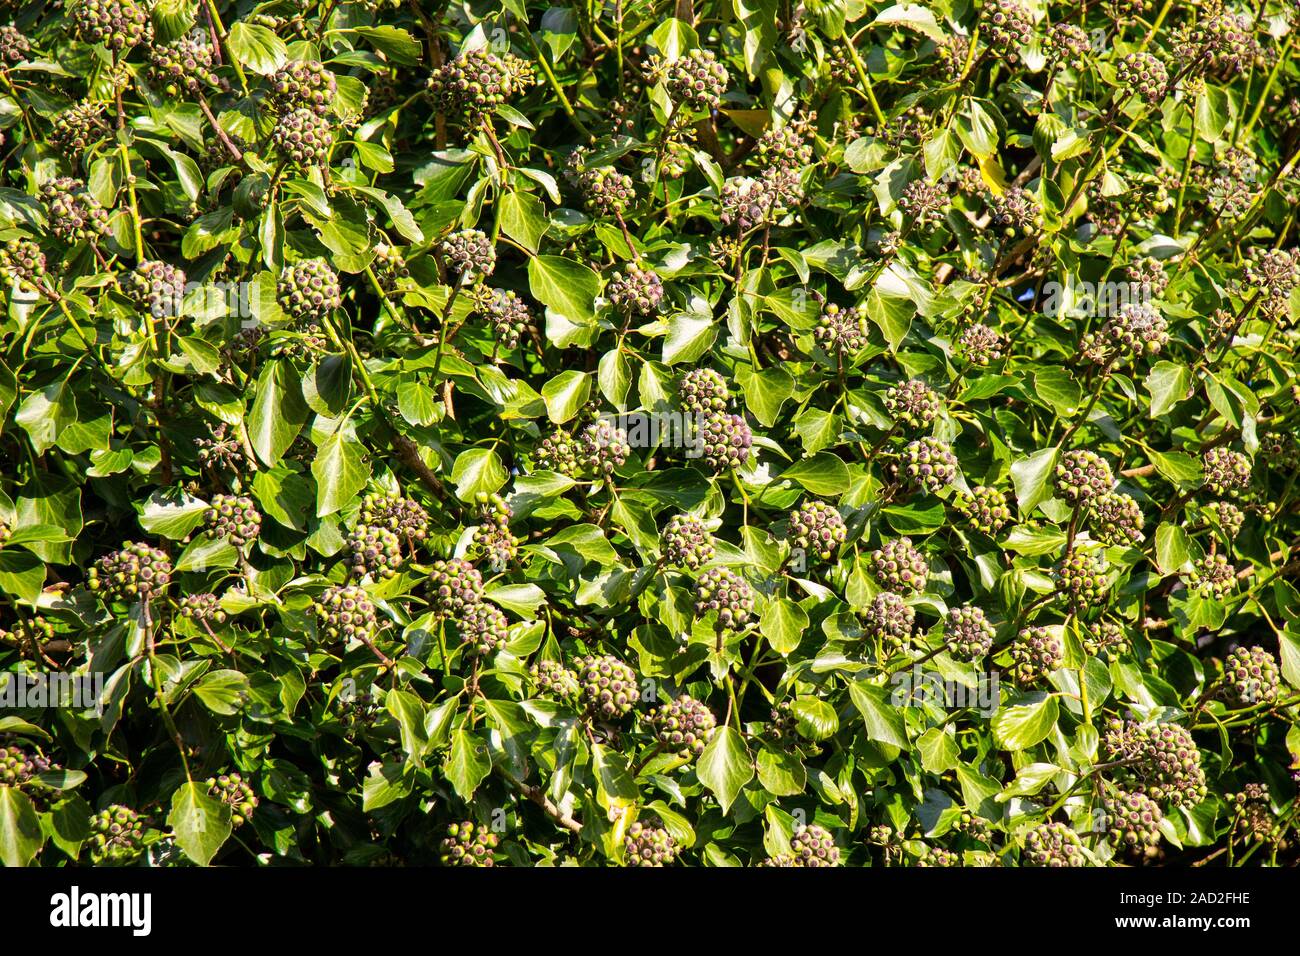 Comune Hedra Edera Helix a frutto di frutti di bosco Foto Stock